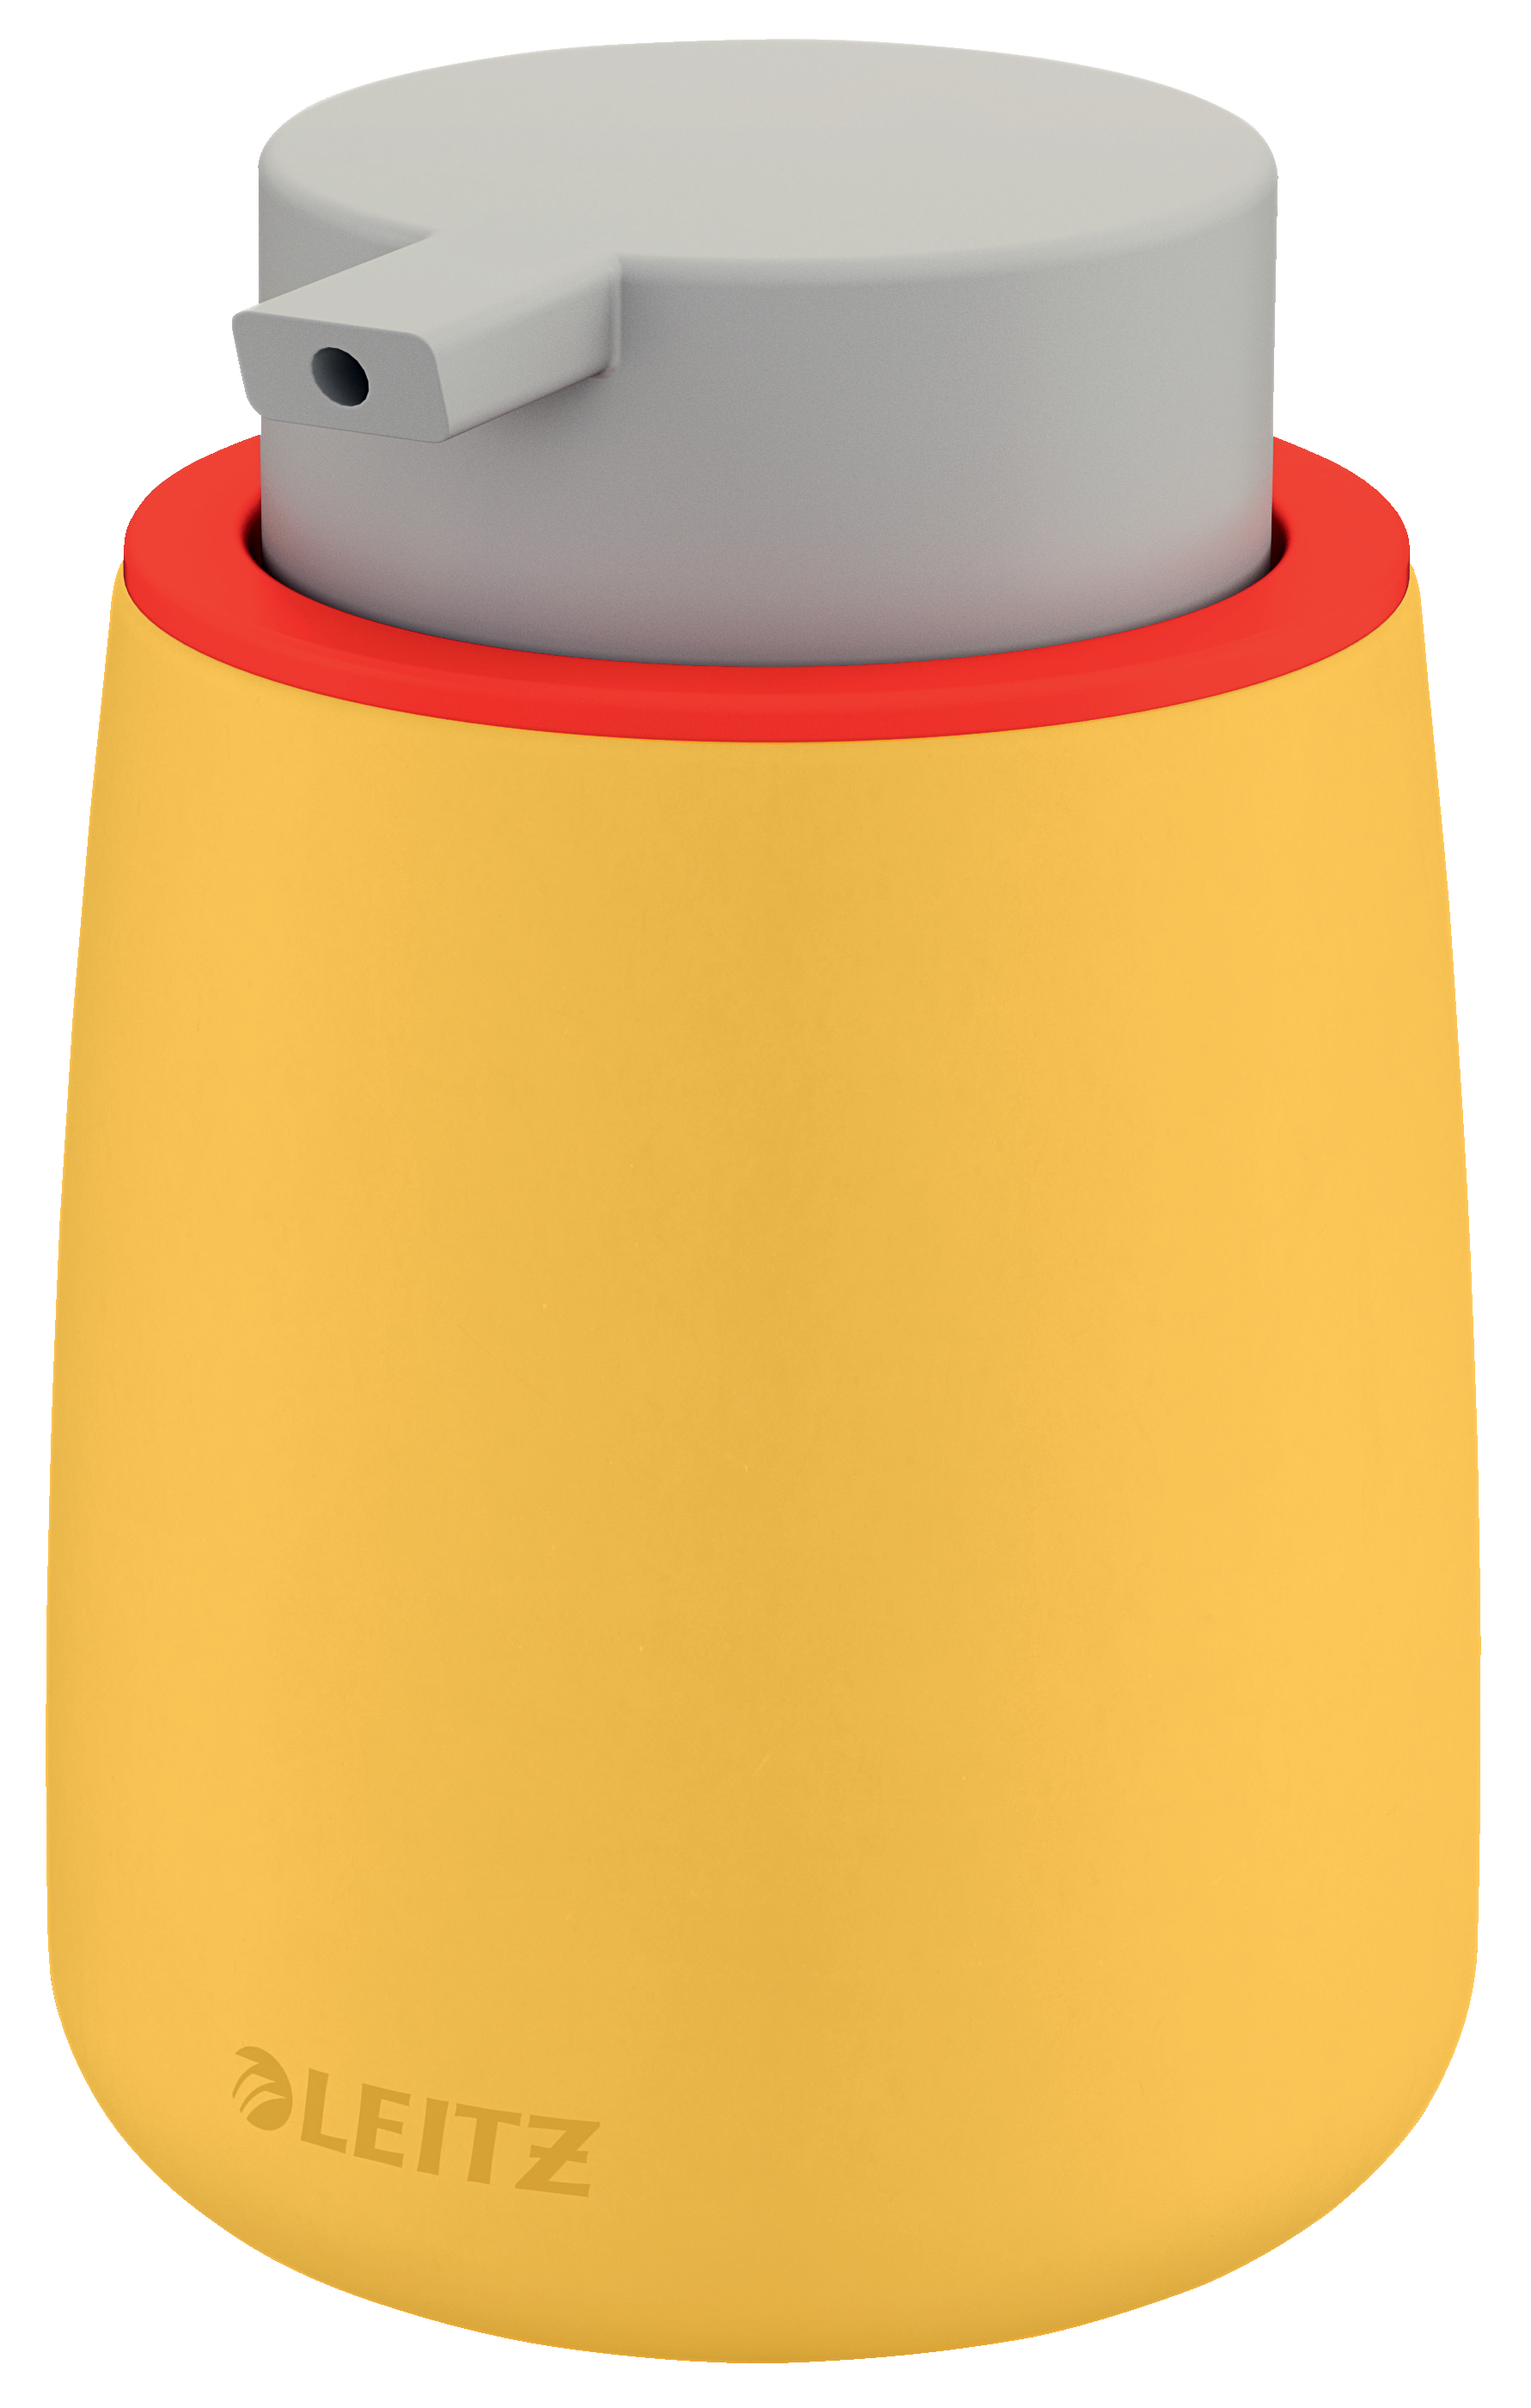 LEITZ Pumpspender Cosy 300ml 5404-00-19 gelb, Keramik